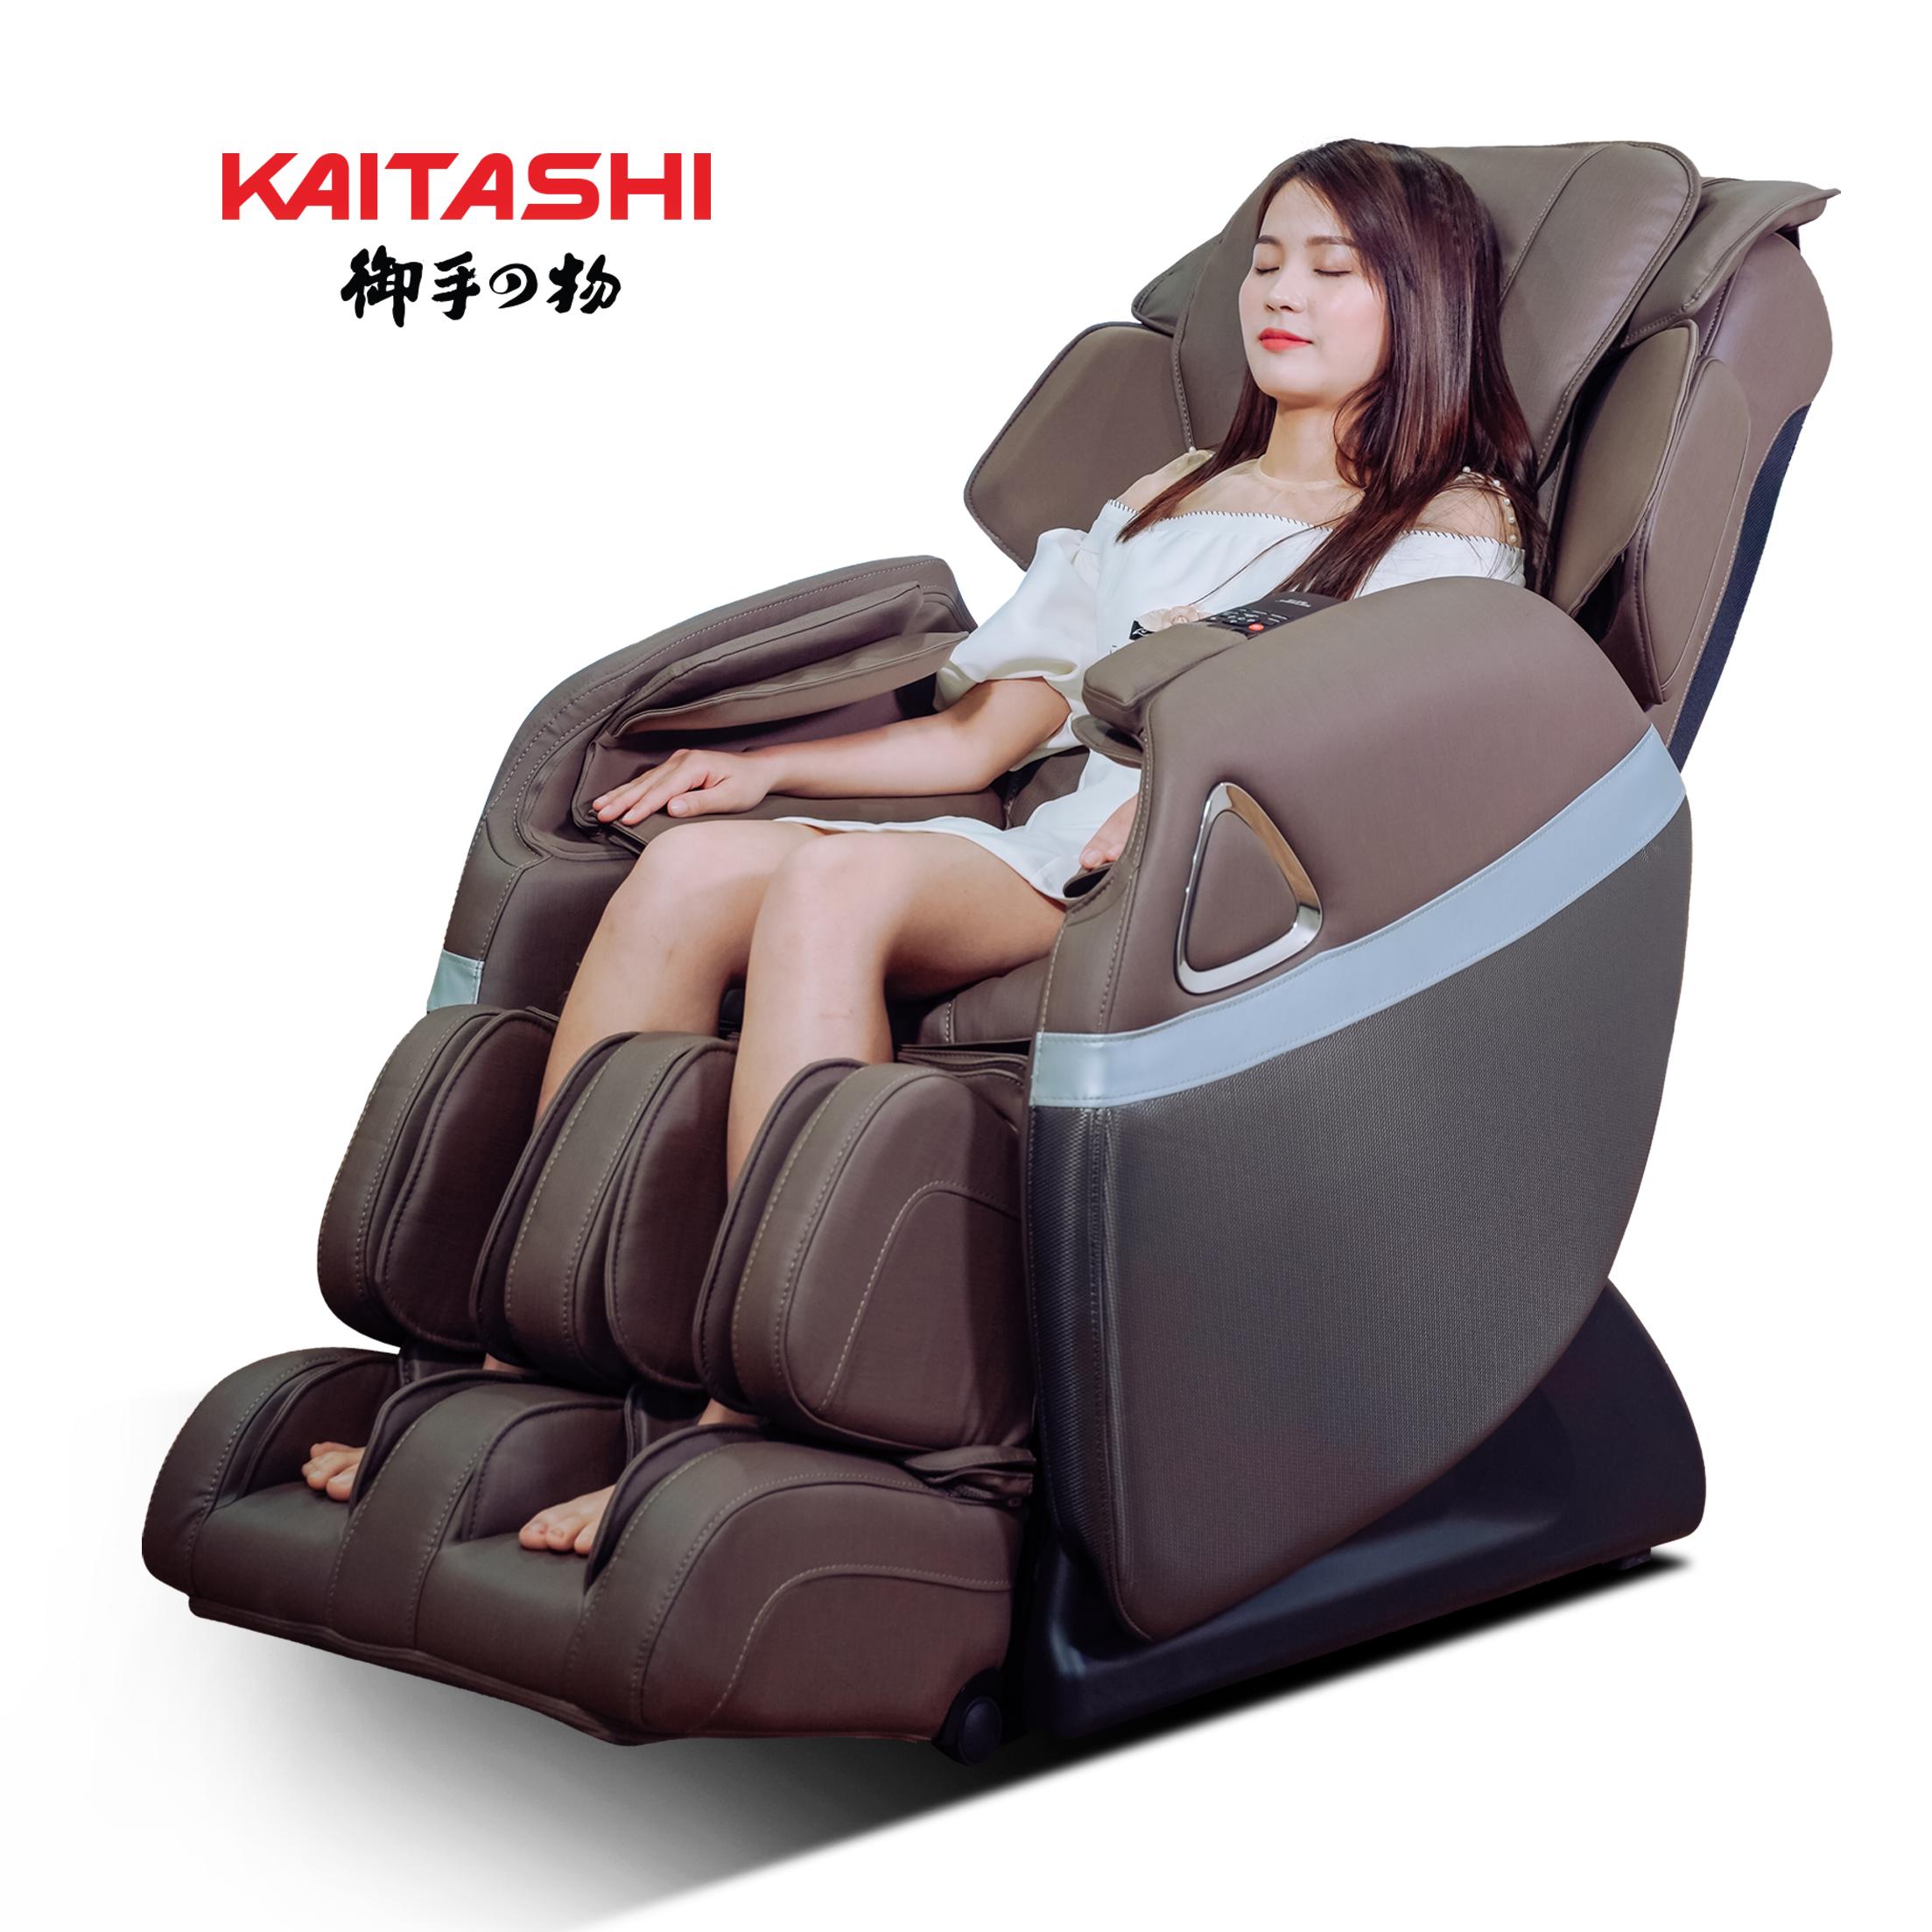 Ghế Massage Toàn Thân Giá Rẻ Kaitashi Ks-168 | Tập Đoàn Kaitashi